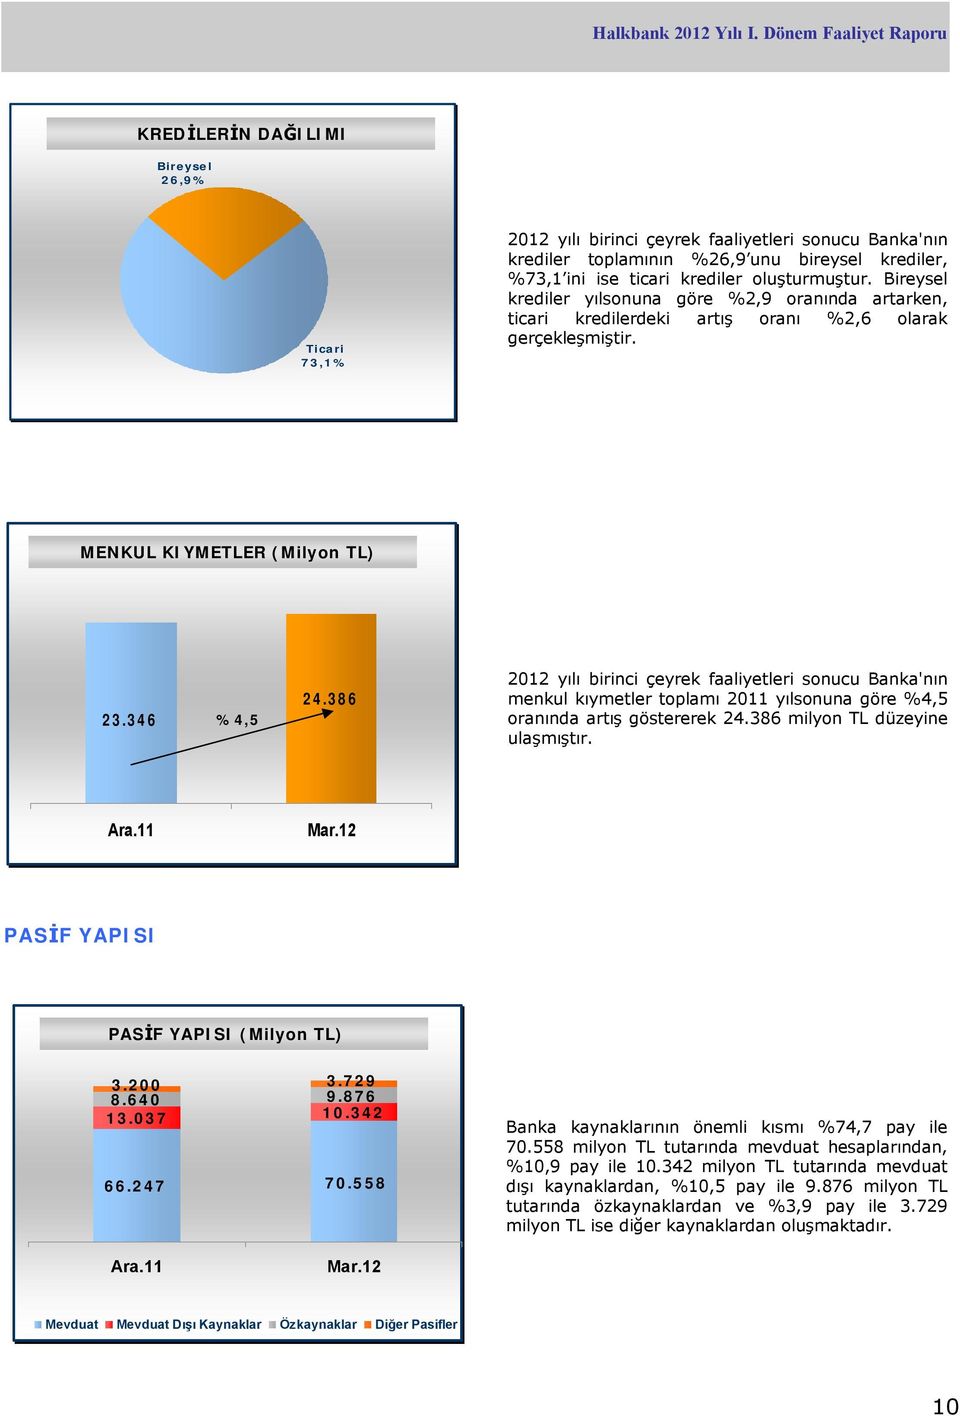 346 %4,5 24.386 2012 yılı birinci çeyrek faaliyetleri sonucu Banka'nın menkul kıymetler toplamı 2011 yılsonuna göre %4,5 oranında artış göstererek 24.386 milyon TL düzeyine ulaşmıştır. Ara.